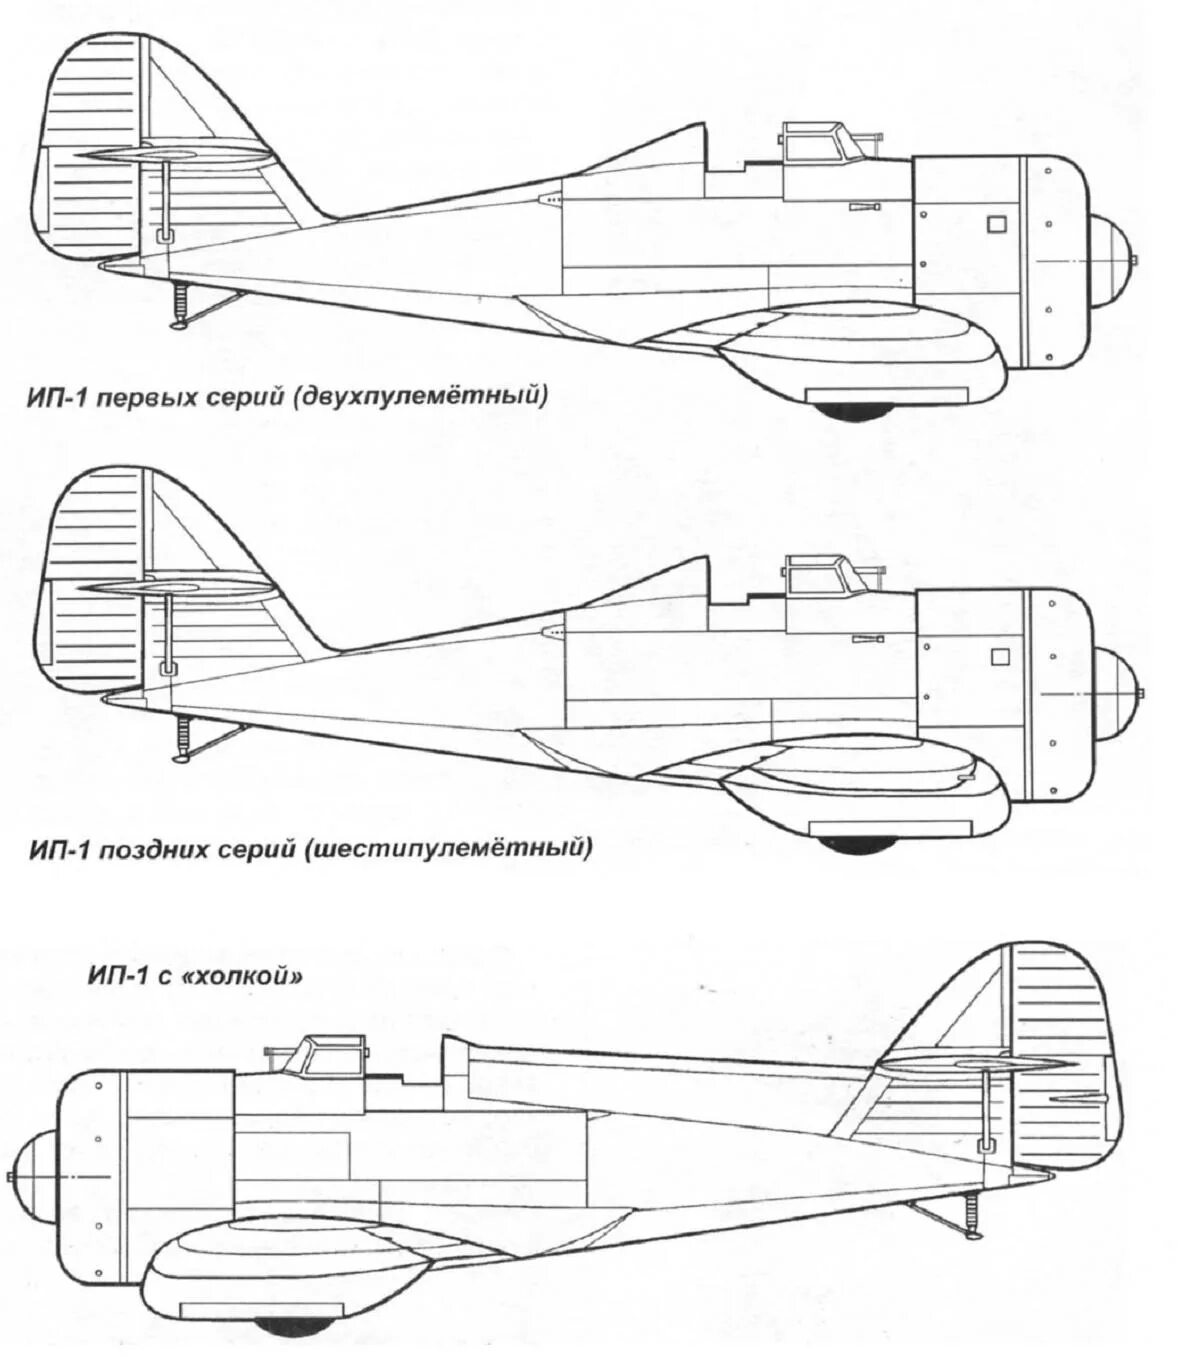 ИП-1 самолет. Григорович ИП-1. ИП-1 (ДГ. Григорович м-9 чертежи.